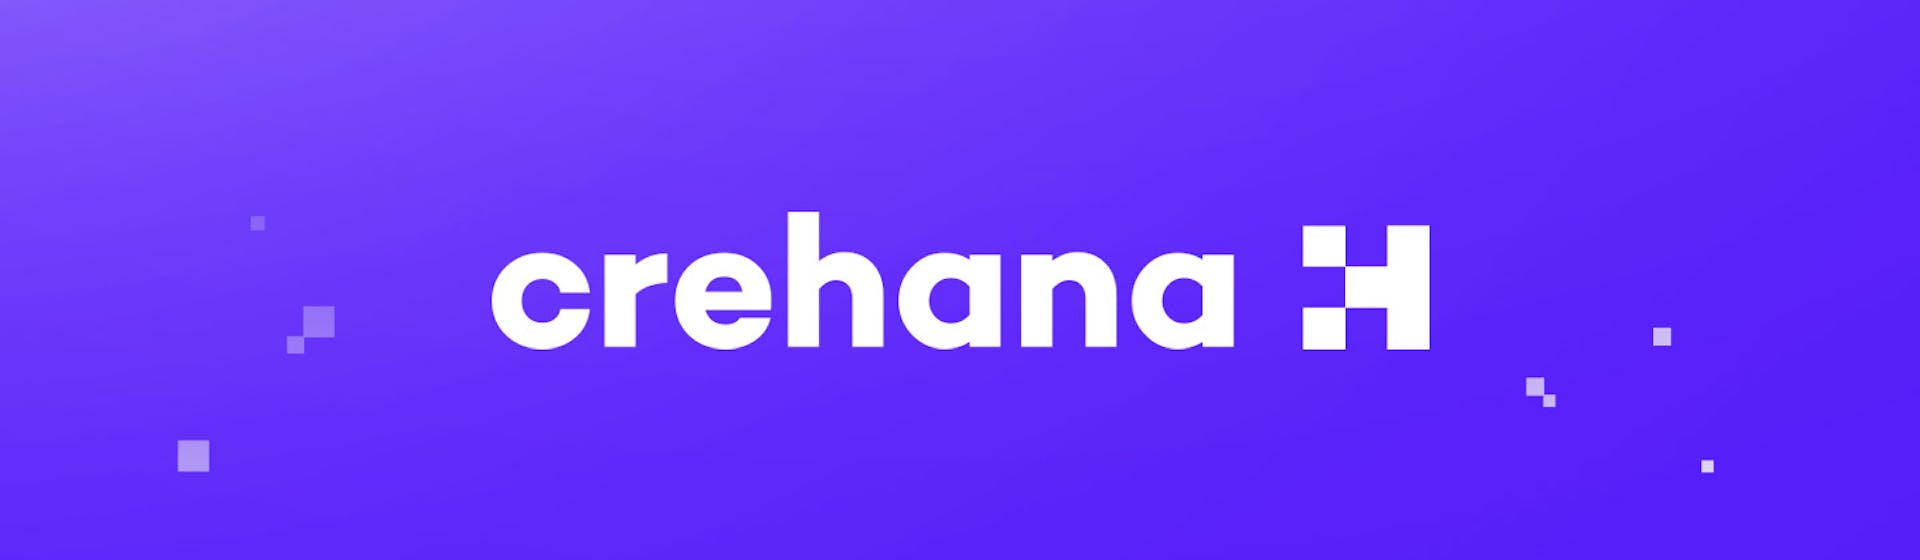 ¿Qué significa el nuevo logo de Crehana?